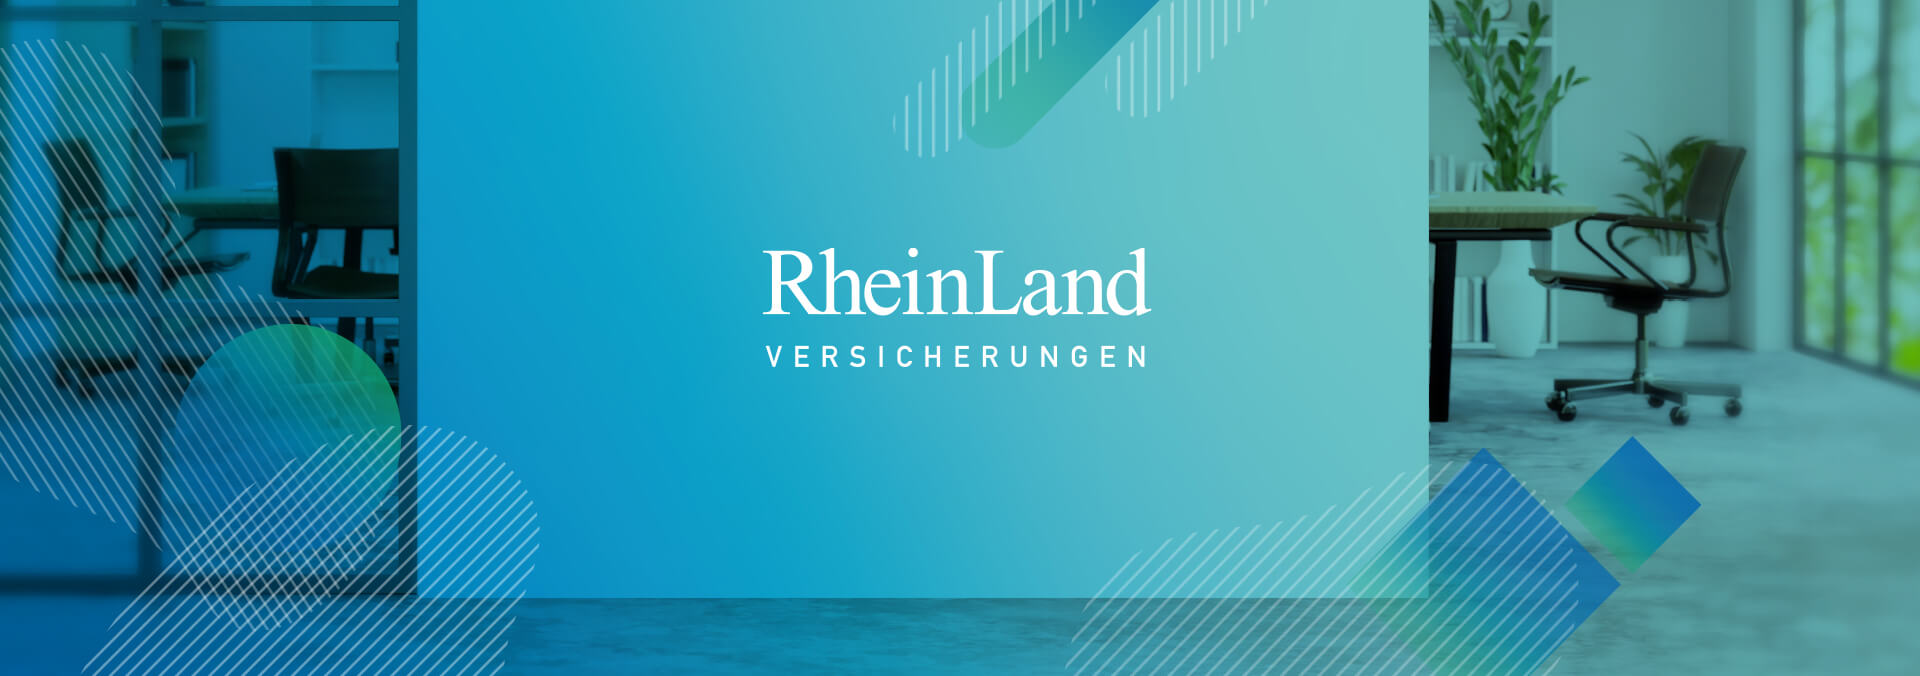 Marketing für RheinLand Versicherungen Headerbild Büroräume mit grafischen Overlays zum Case Recruiting Campagne